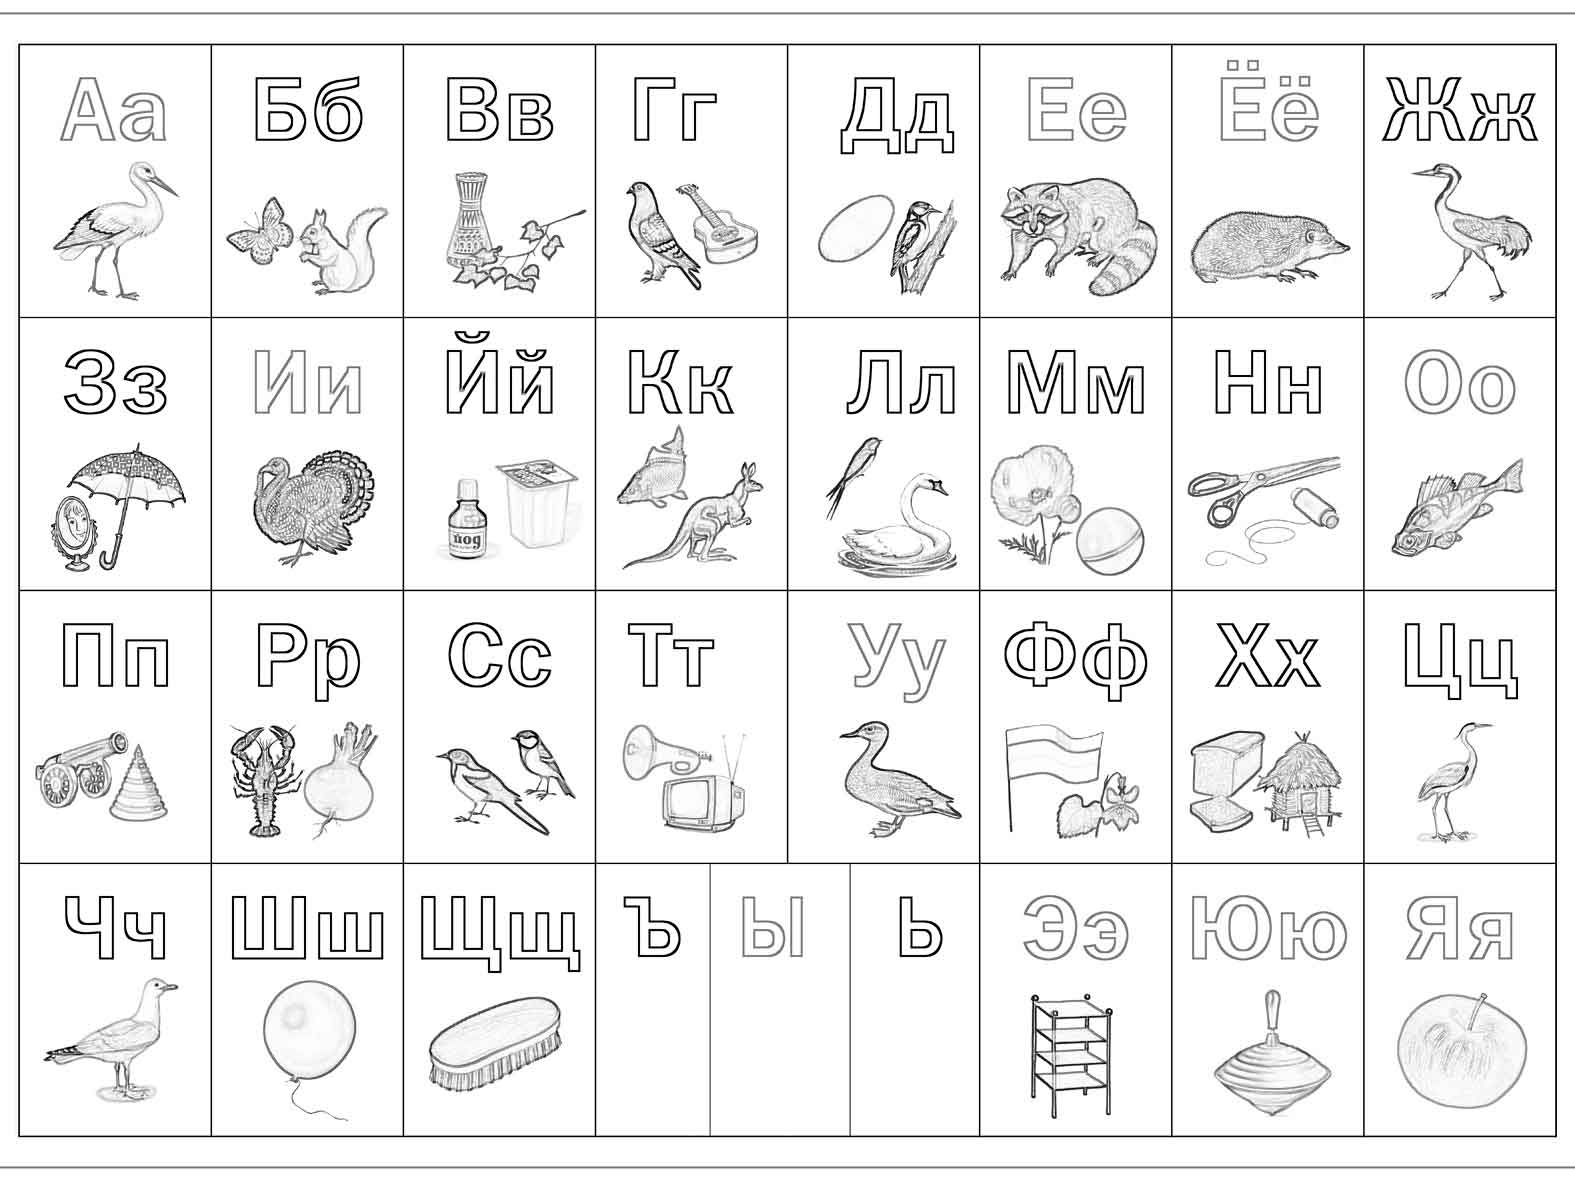 Children's alphabet